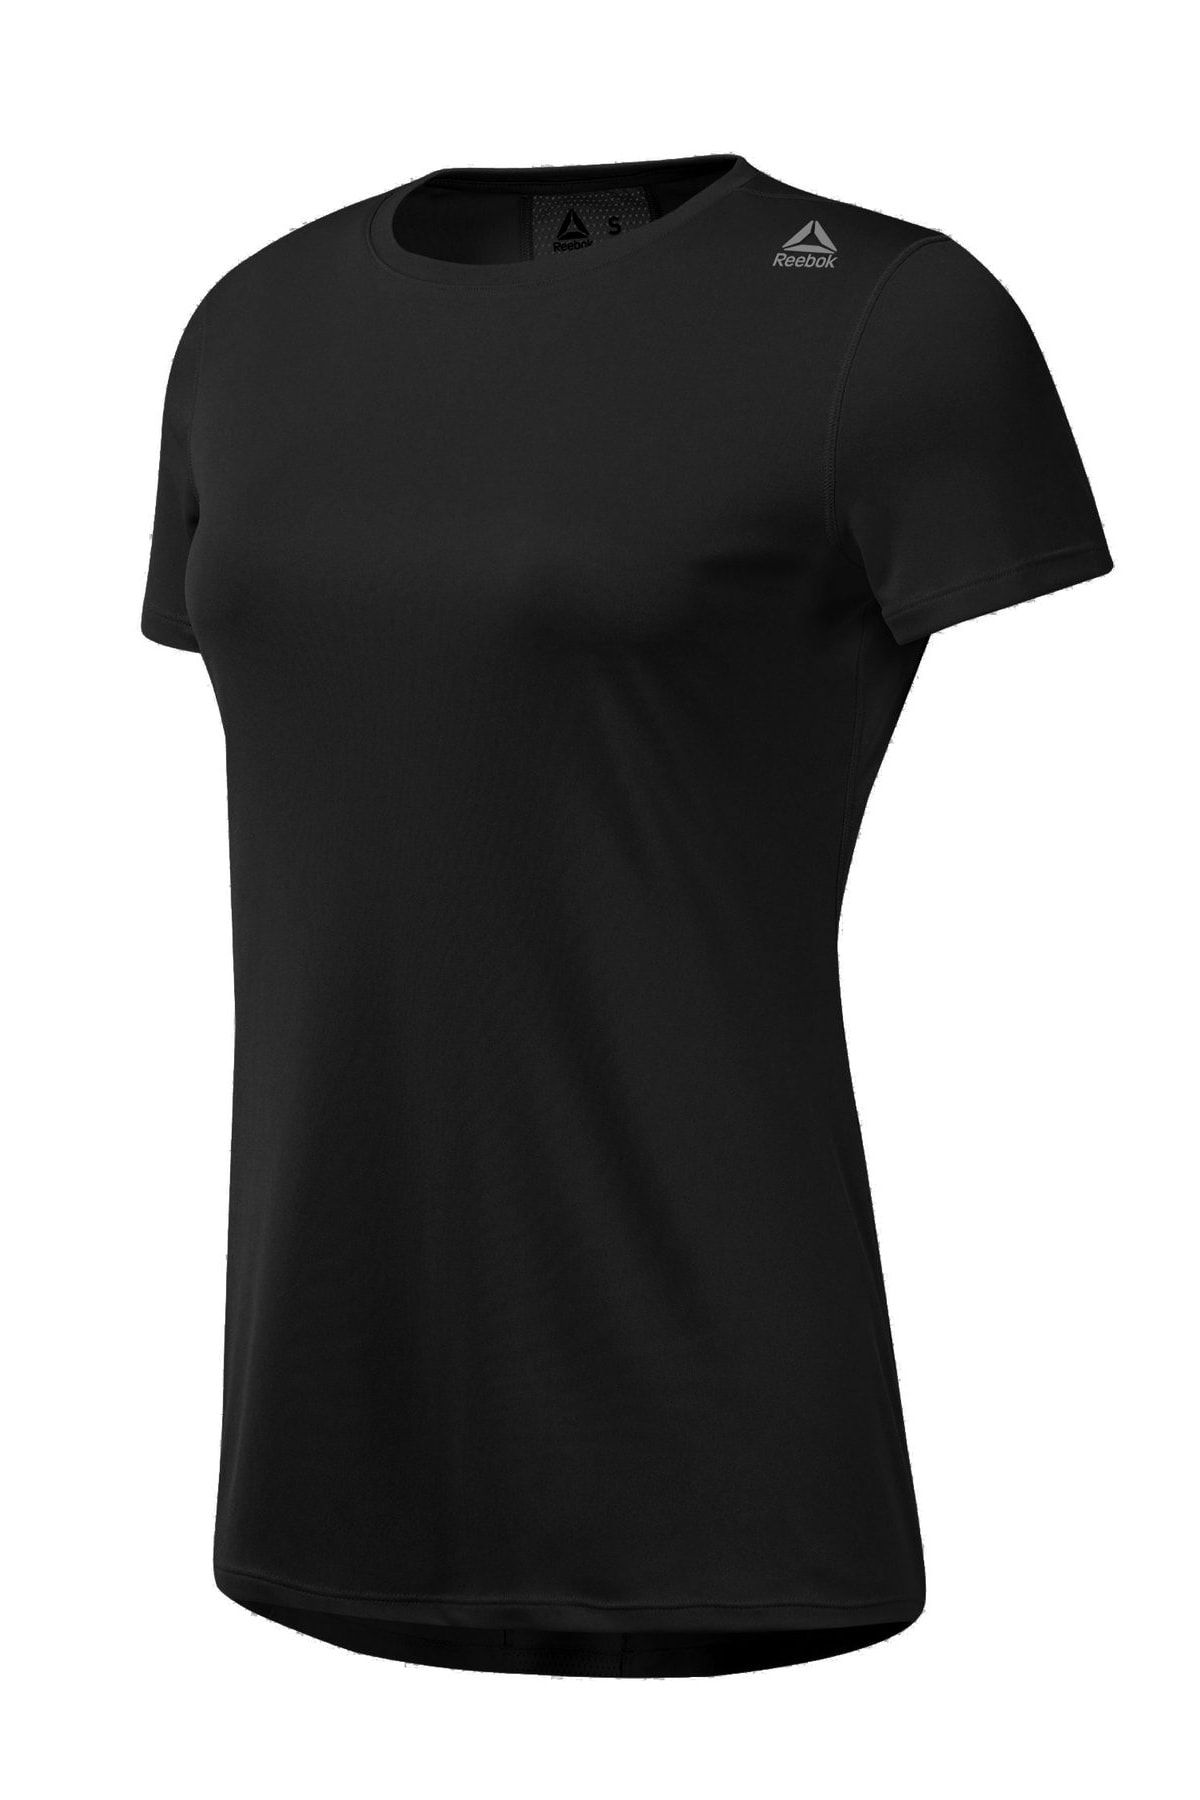 Reebok Kadın T-shirt - Re Ss Tee - DI0257